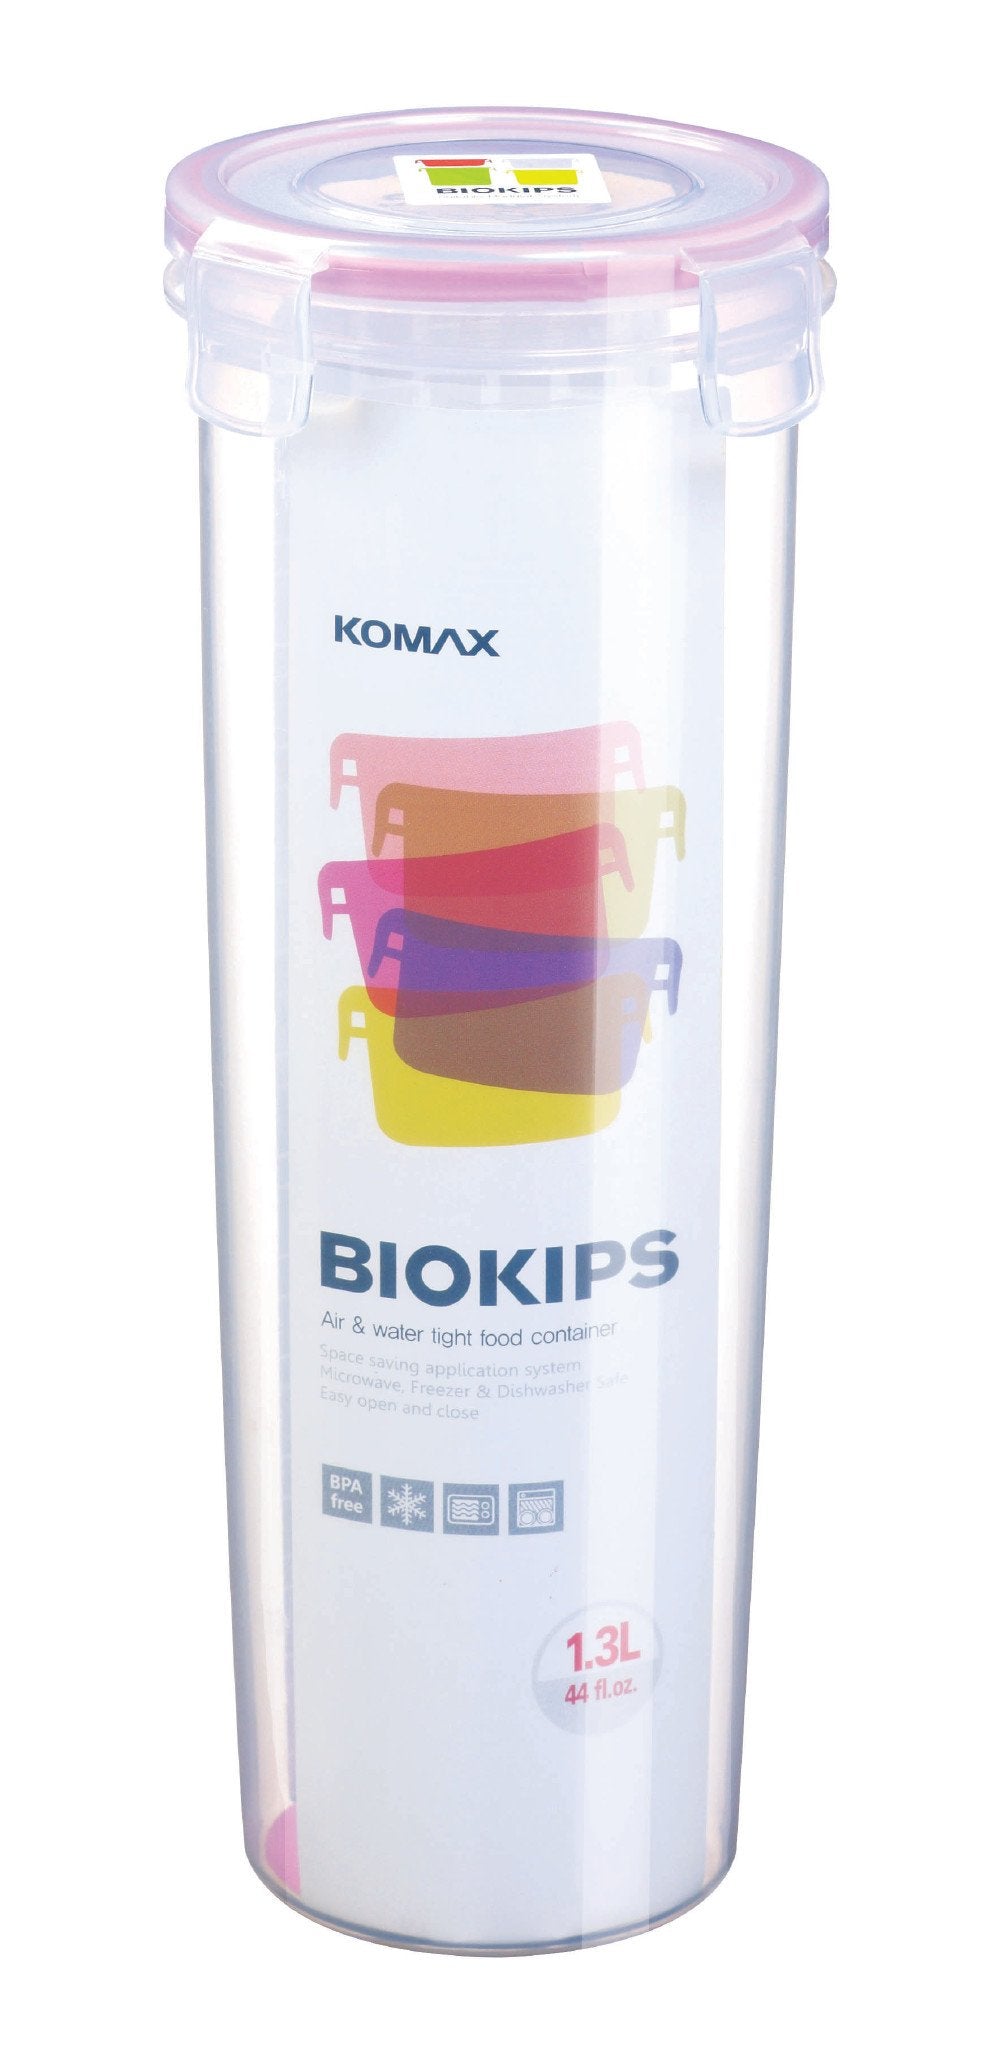 Komax Biokips Round Food Storage Container, 1.3 L
                Komax Biokips Round Food Storage Container, 1.3 L